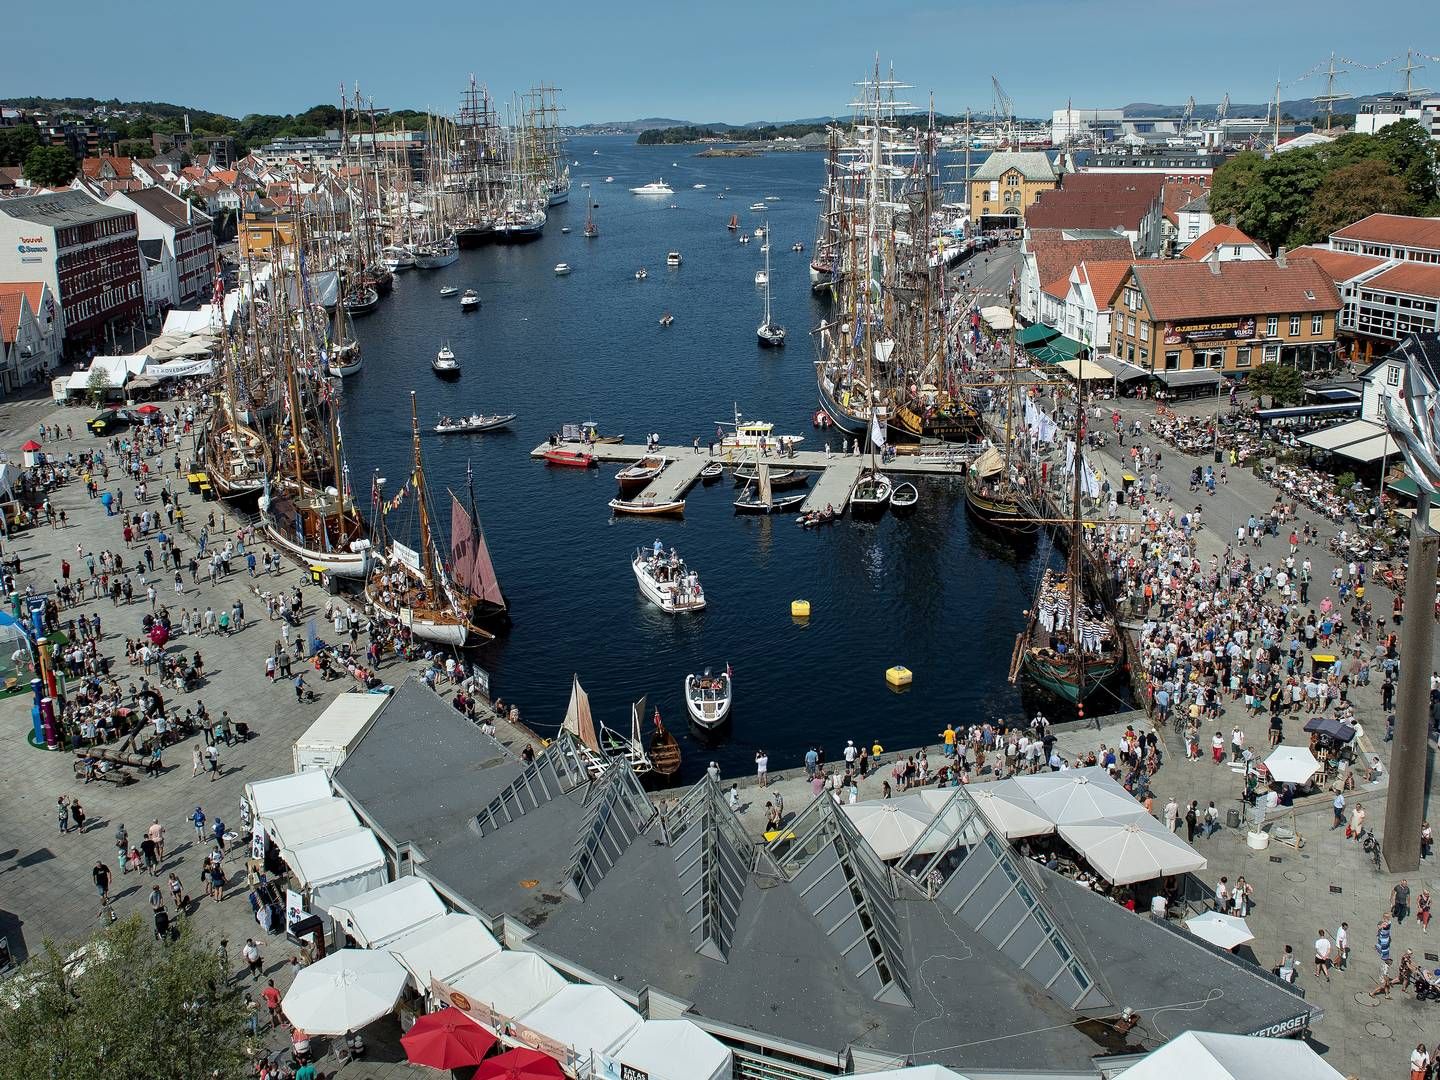 OPPSVING: Handelsbanken skriver i sin ferske markedsrapport at Stavanger vil få et sterkt oppsving i boligprisene som følge av økt aktivitet i petroleumssektoren. | Foto: Foto: Carina Johansen / NTB